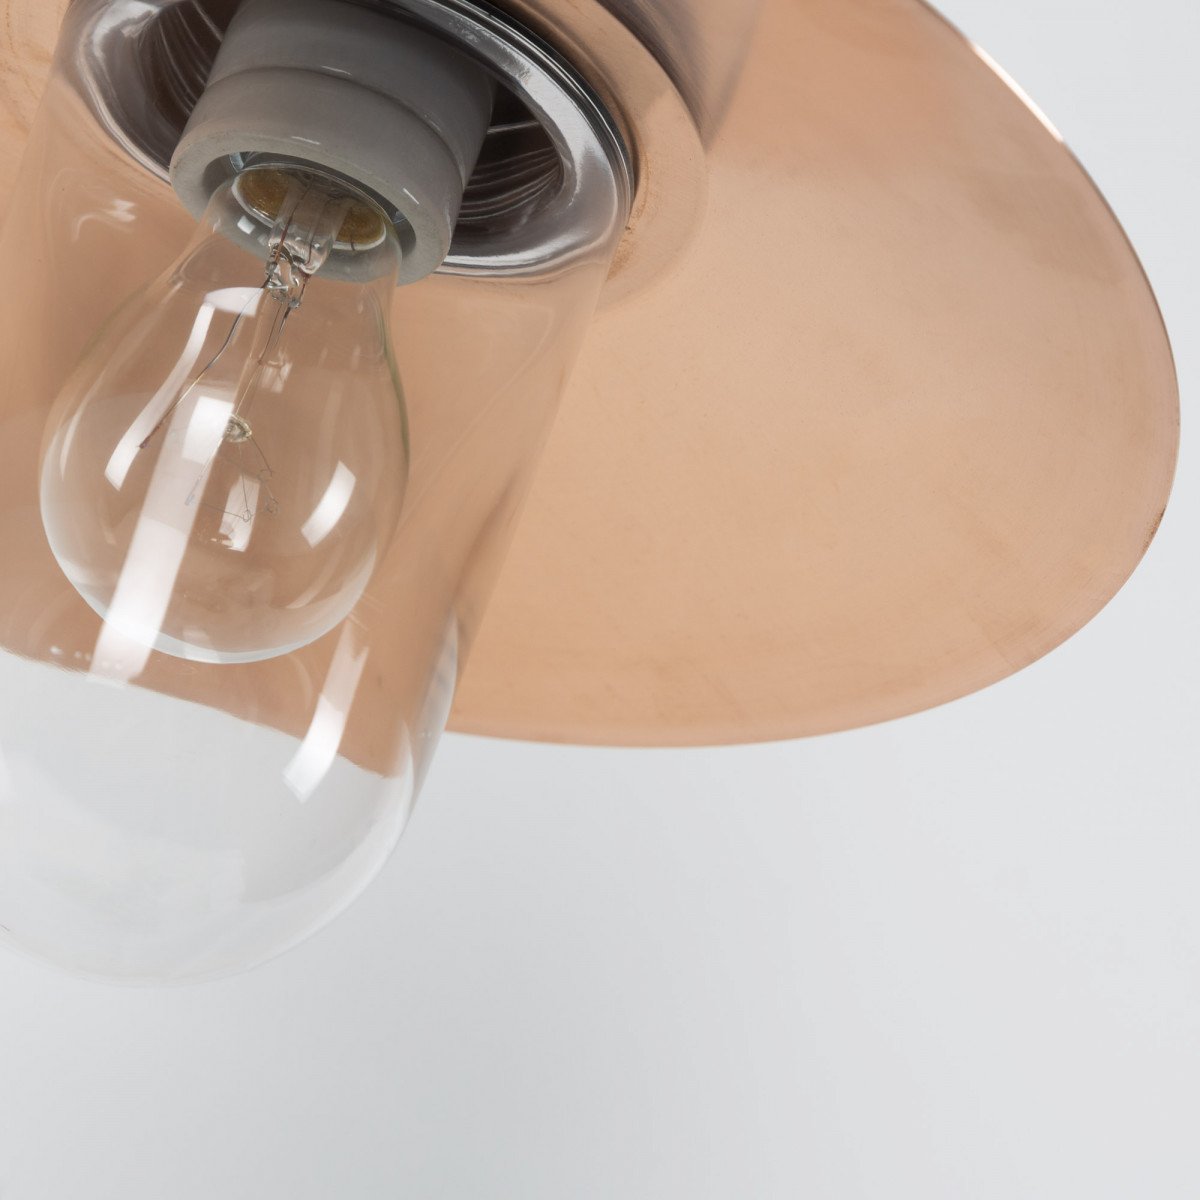 Stallamp Ardennes franse stallampen gemaakt van gietijzer en koper met een heldere glazen stolp, onderhoudsvriendelijke buitenverlichting van KS Verlichting